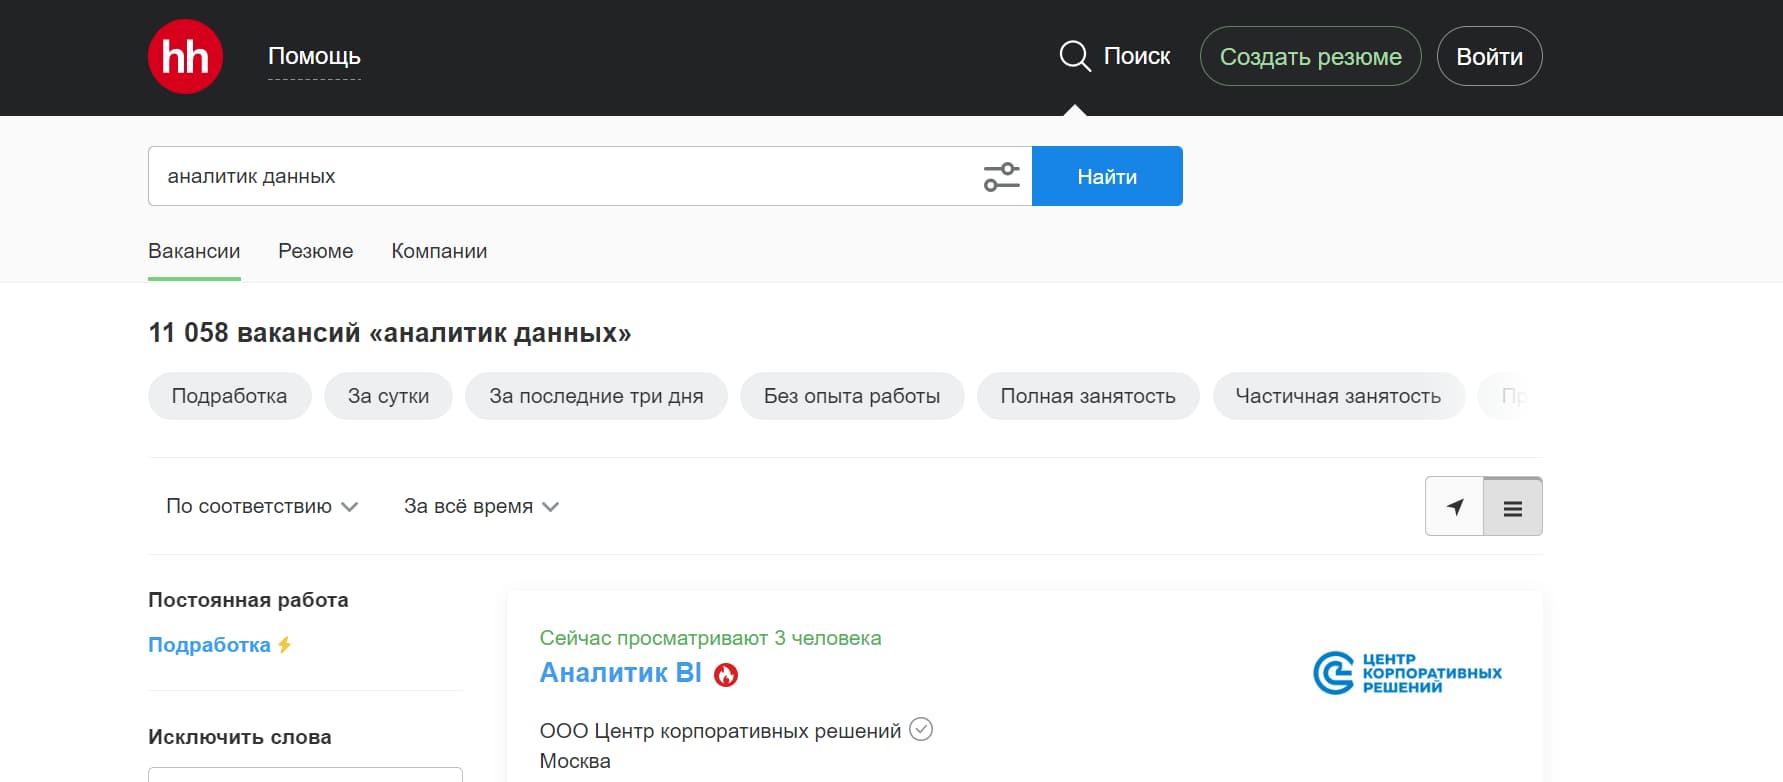 На сайте hh.ru размещено более 11 000 вакансий для аналитиков данных: